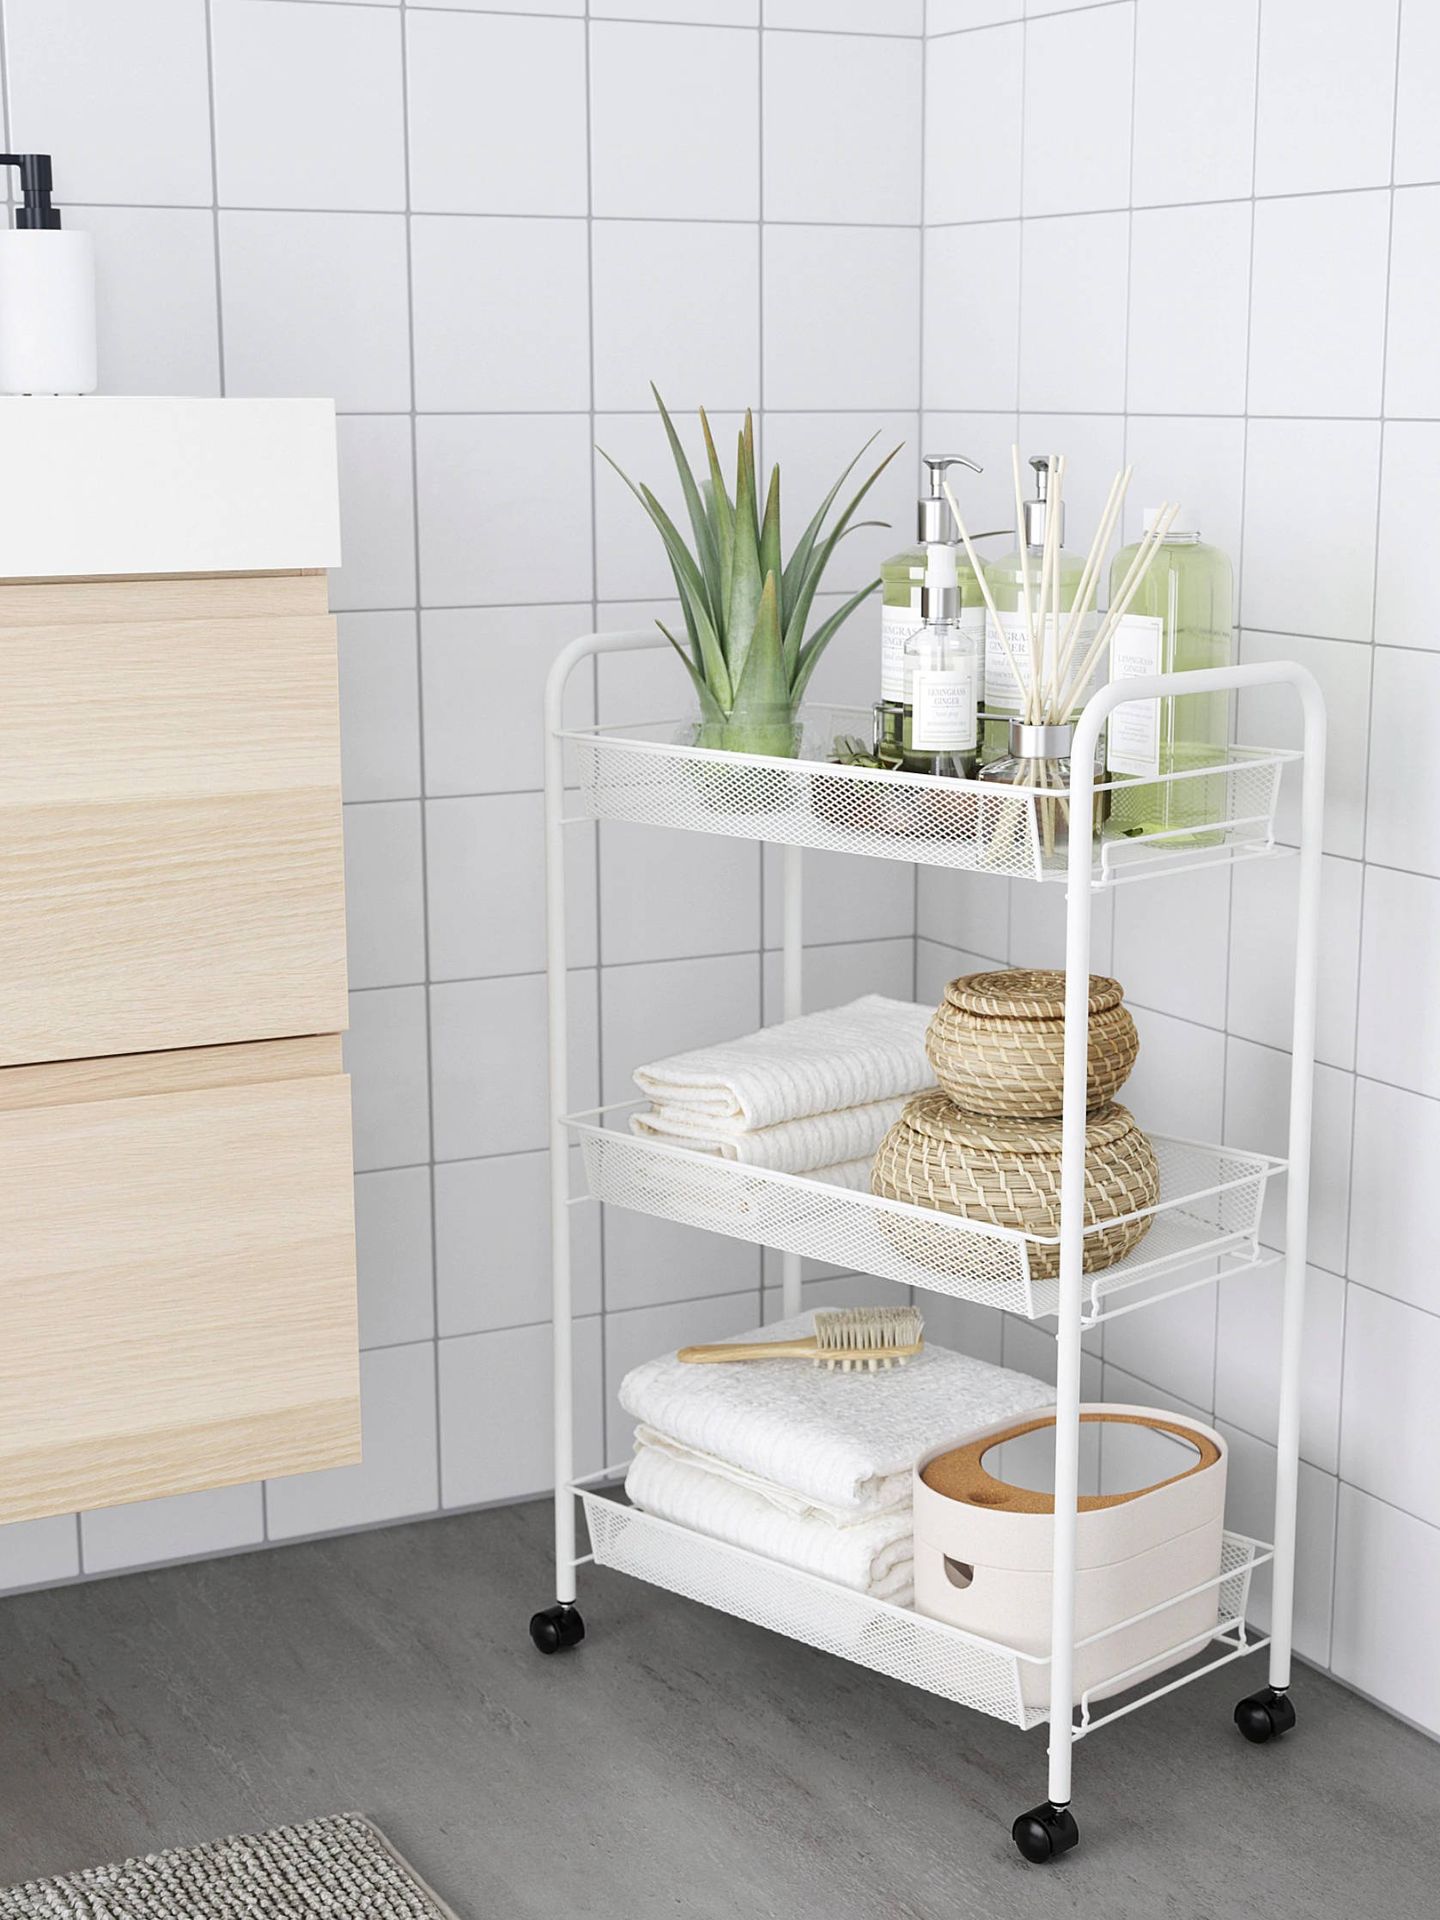 Muebles de Ikea para ganar espacio en un baño pequeño. (Cortesía)